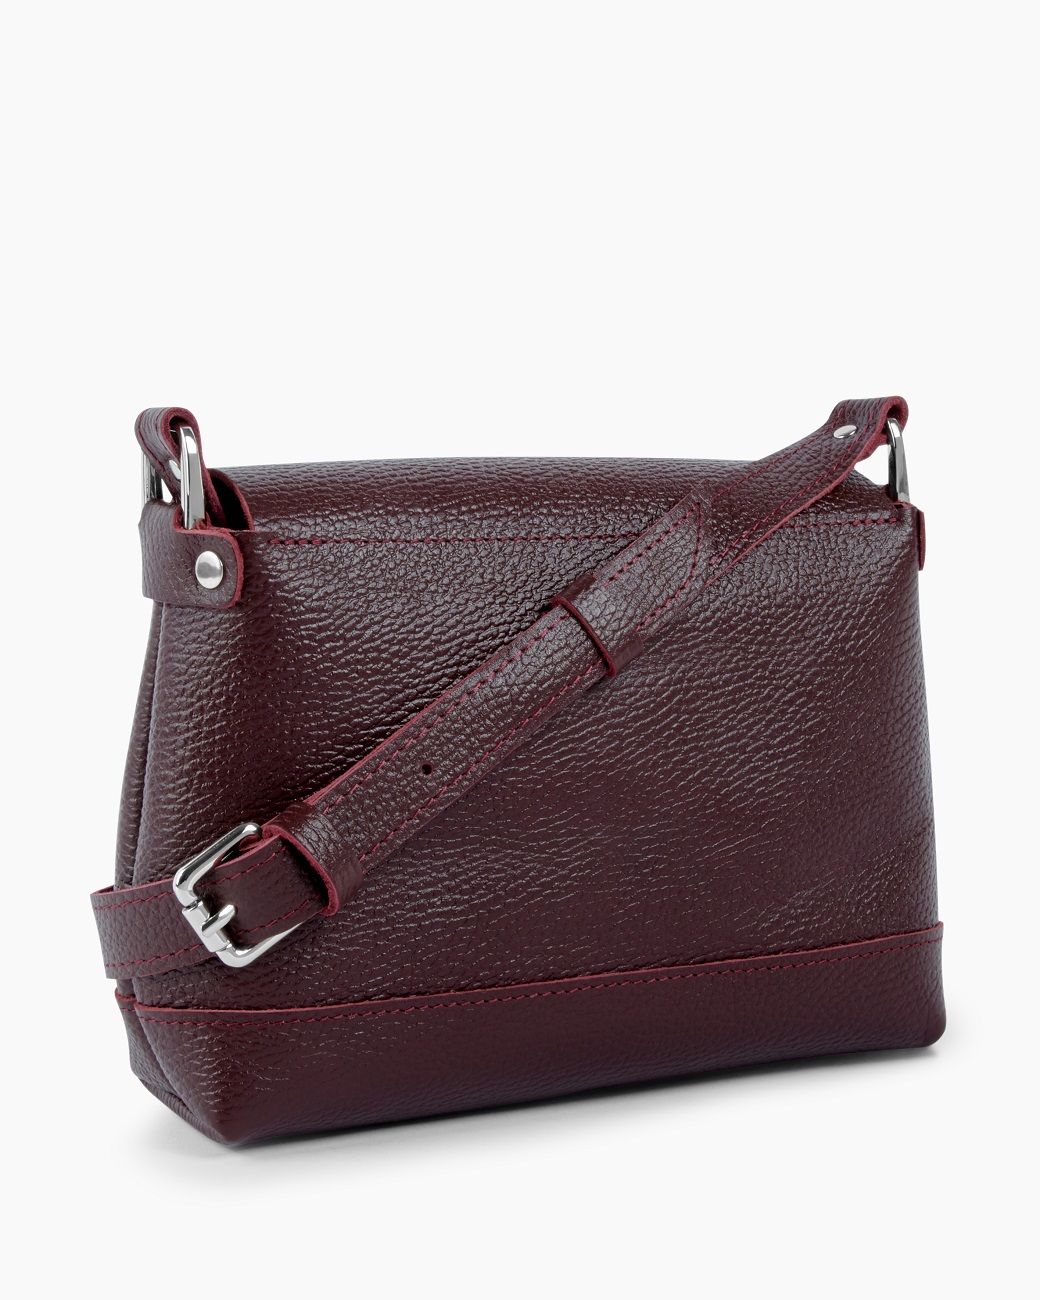 Женская кожаная сумка на плечо бордовая A003 burgundy grain